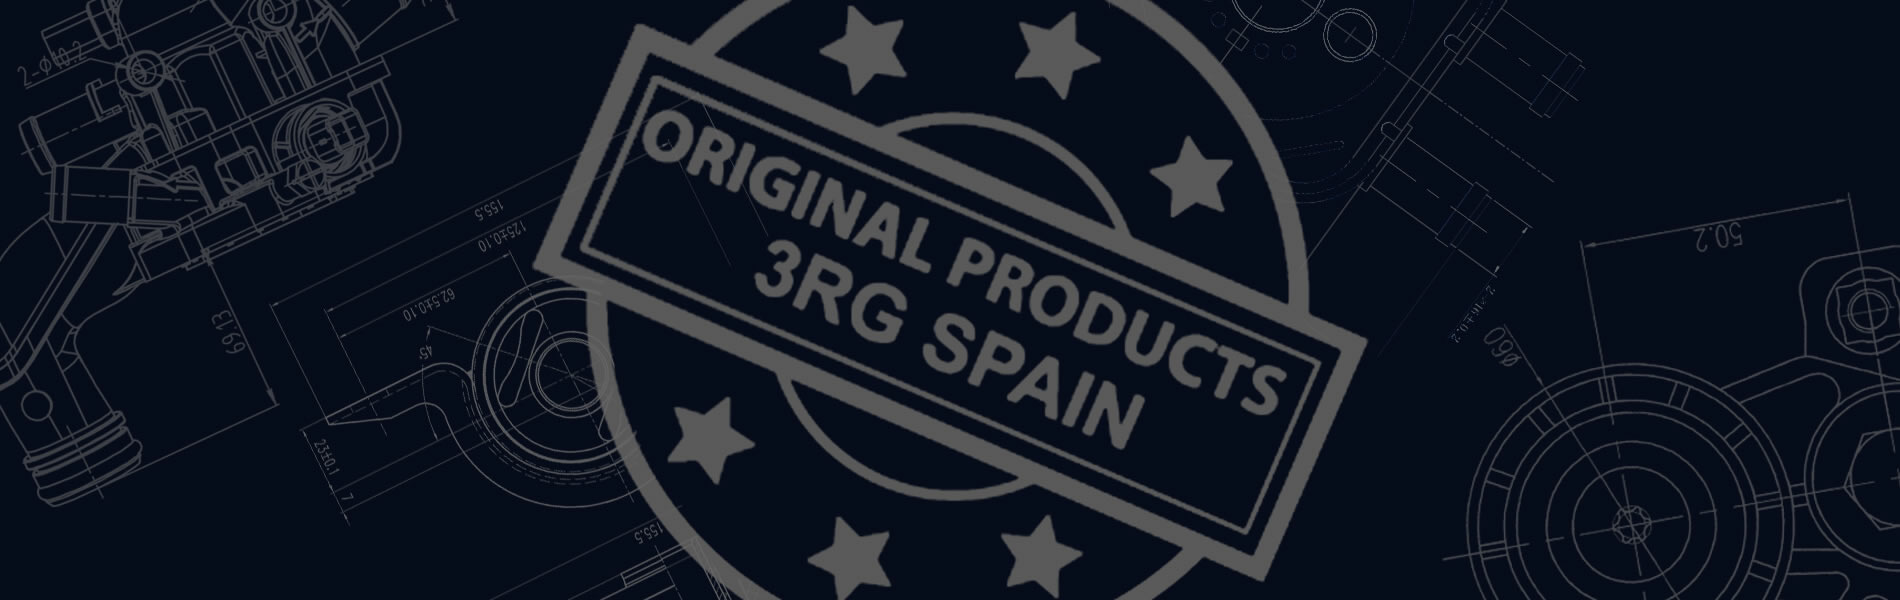 Productos originales fabricados en España